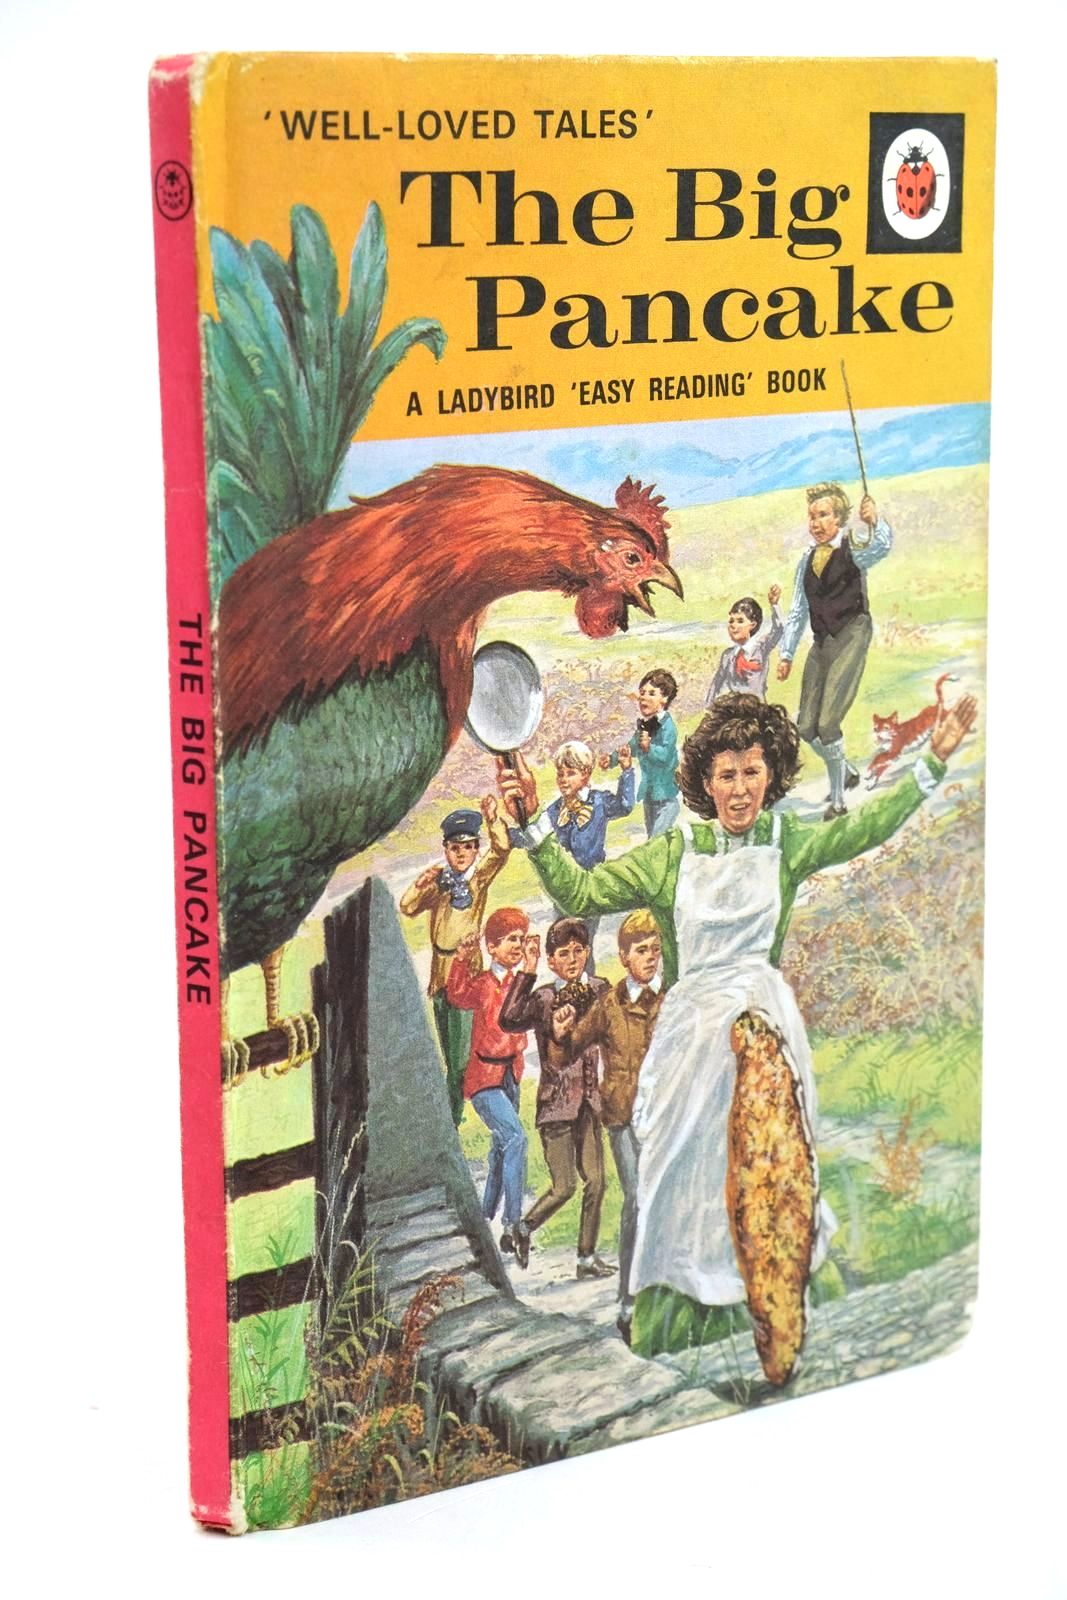 The Big Pancake